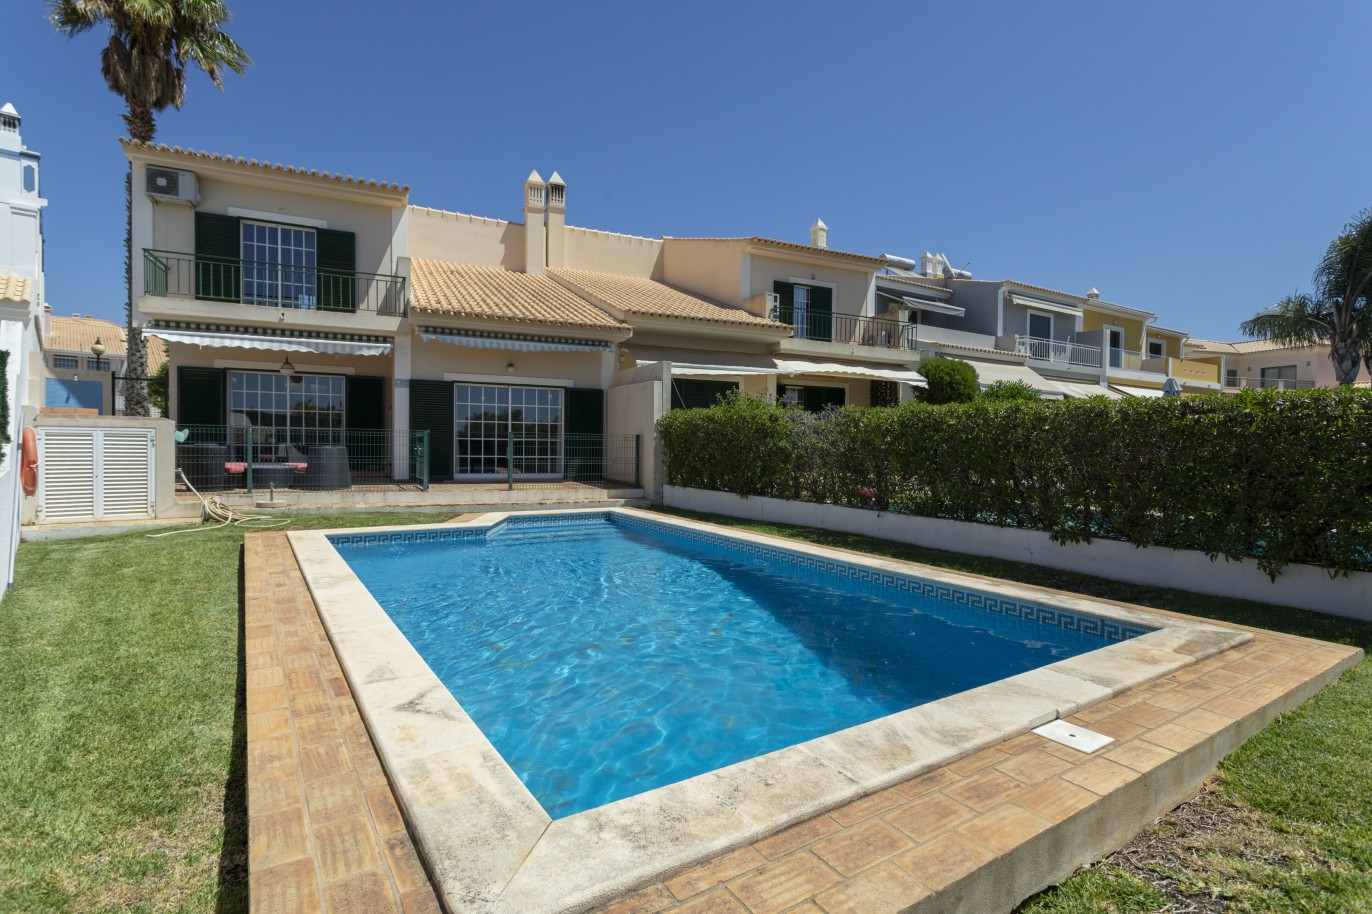 3 bedroom villa with pool, for sale in Vilamoura, Algarve_233831